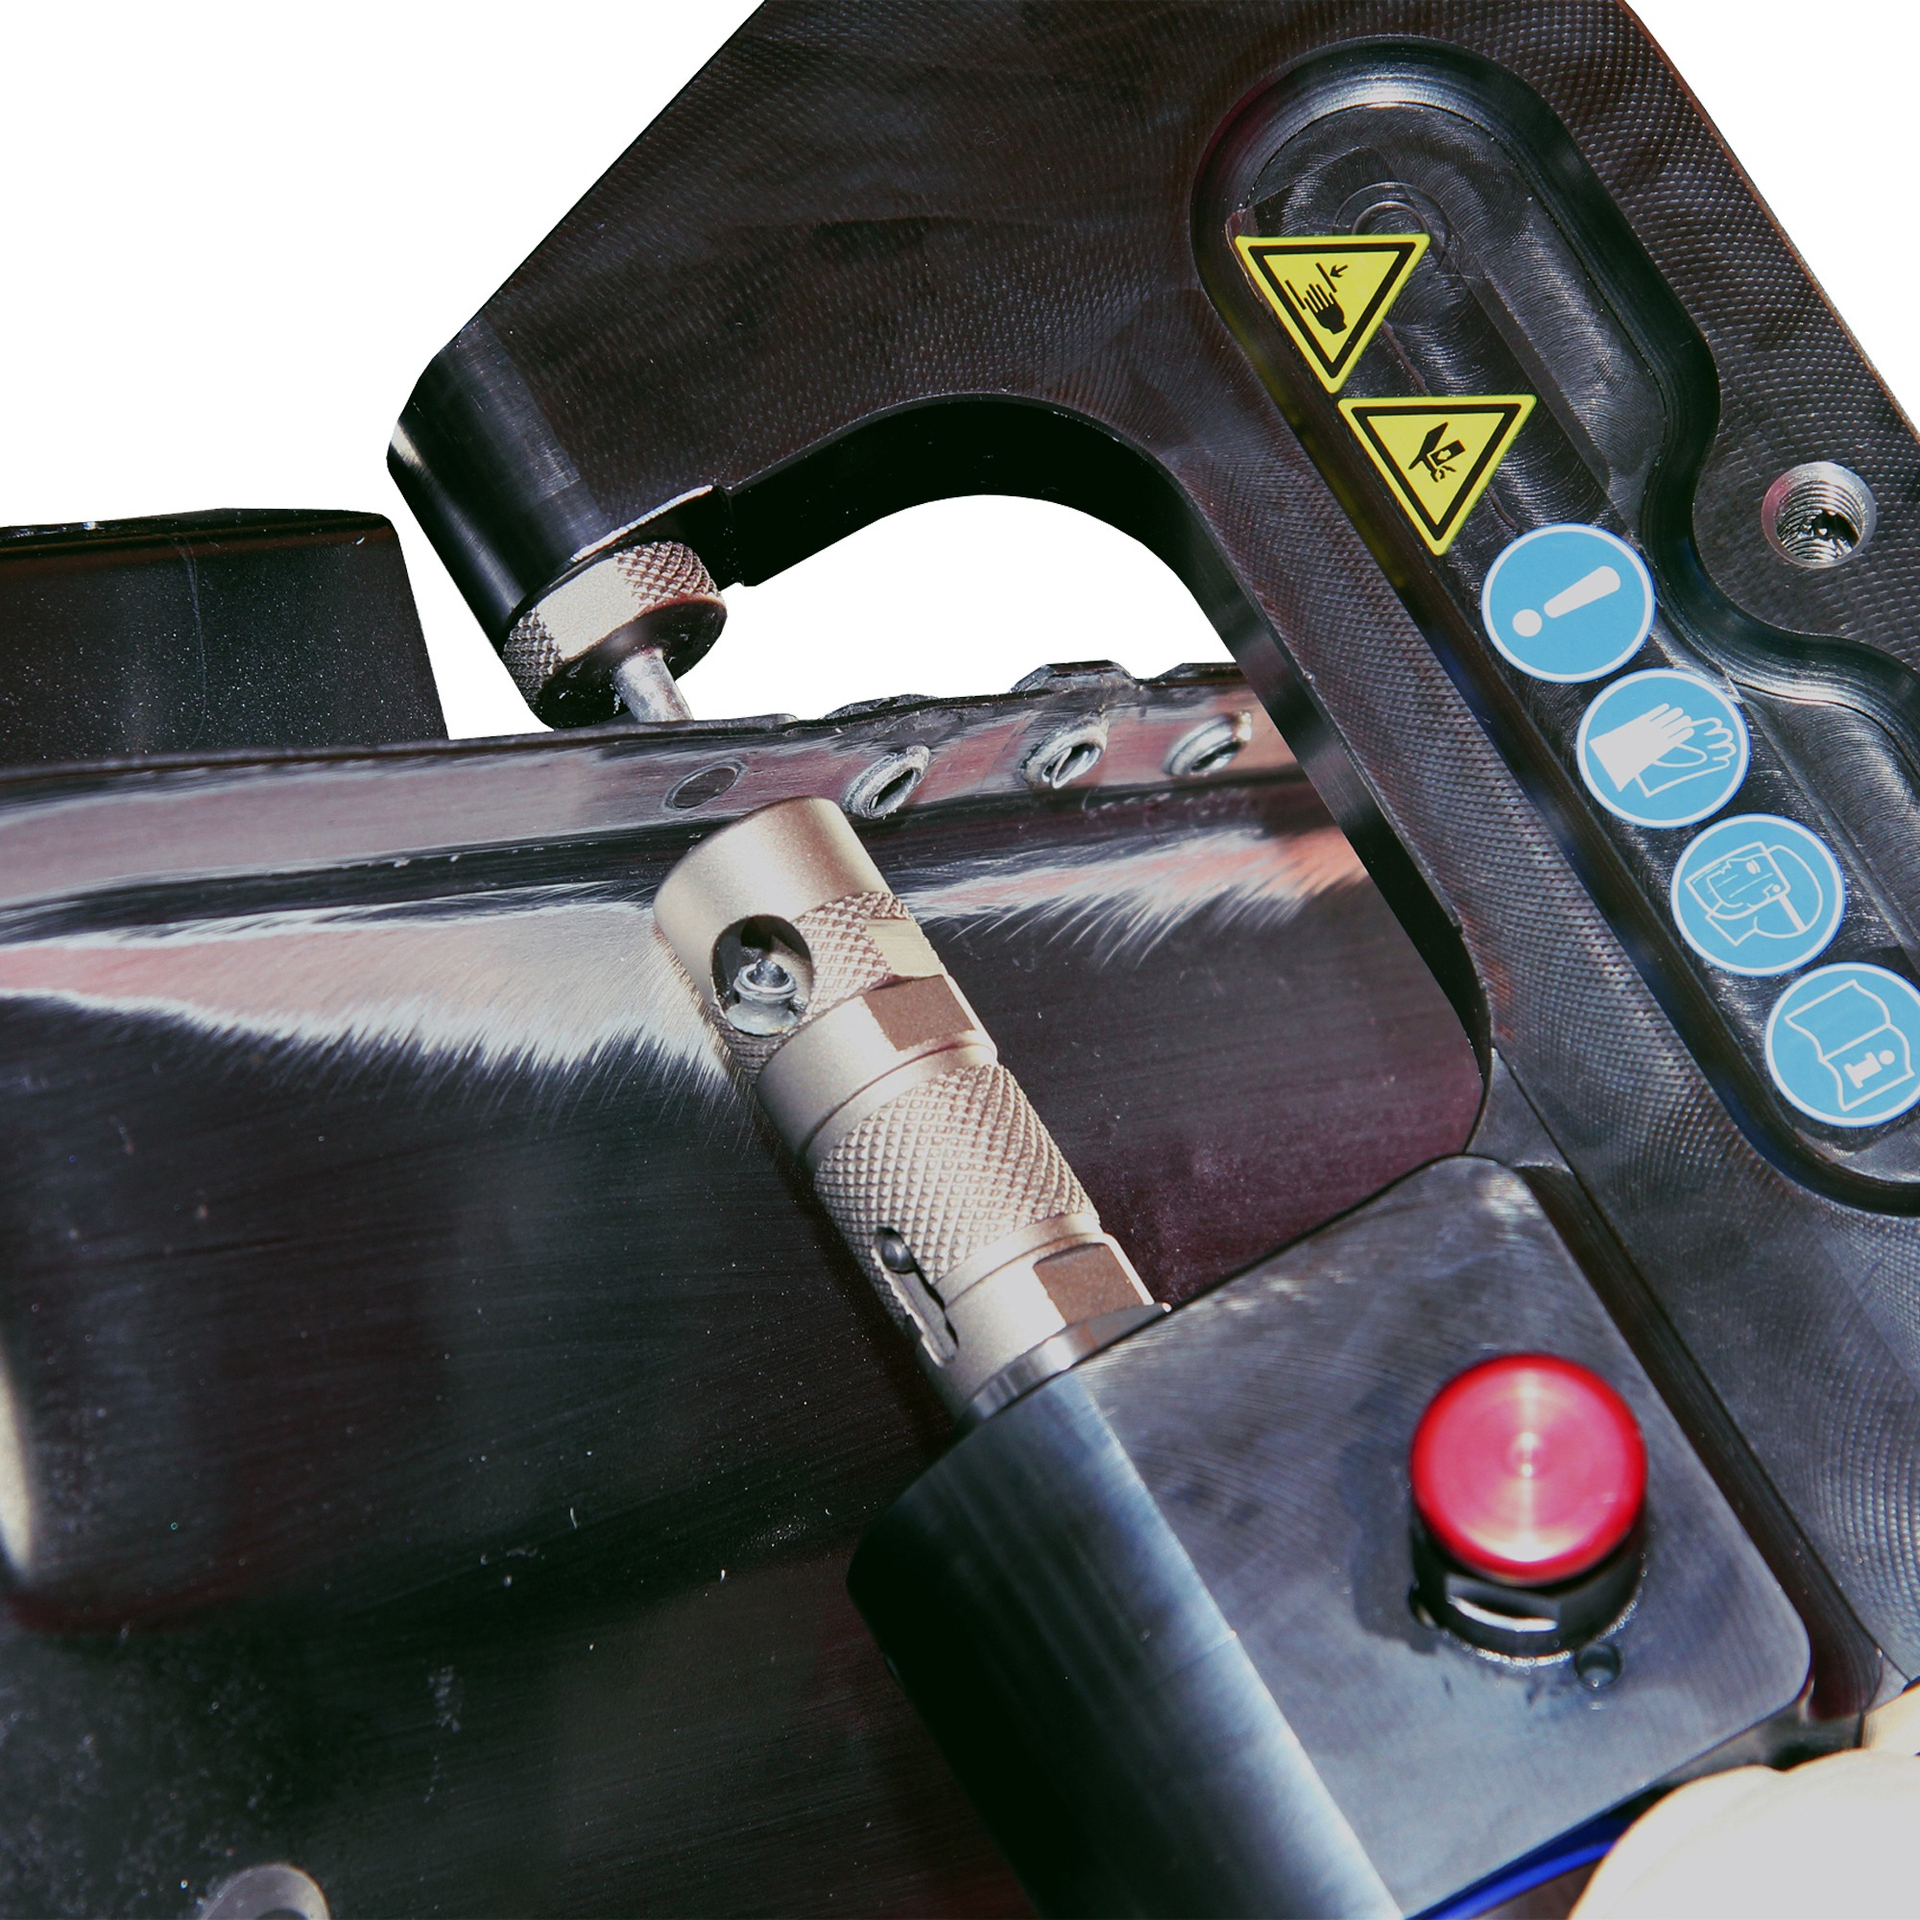 XPress 800 Basic Set Заклепочный инструмент для выдавливания и установки ремонтных заклепок. Wieländer+Schill - Германия цена